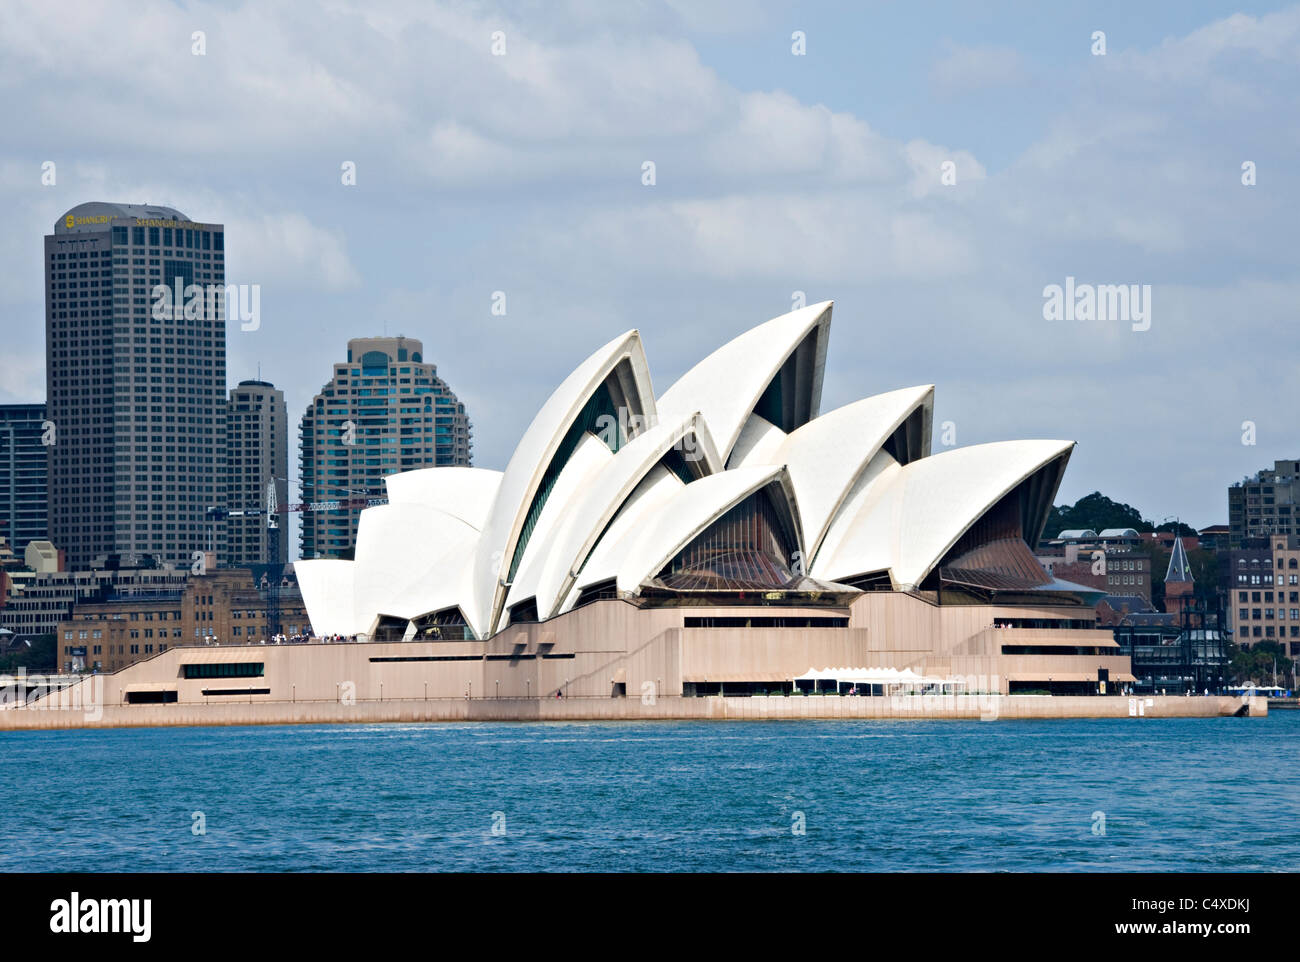 Le magnifique opéra de Sydney sur Bennelong Point dans le port de Sydney New South Wales Australie Banque D'Images